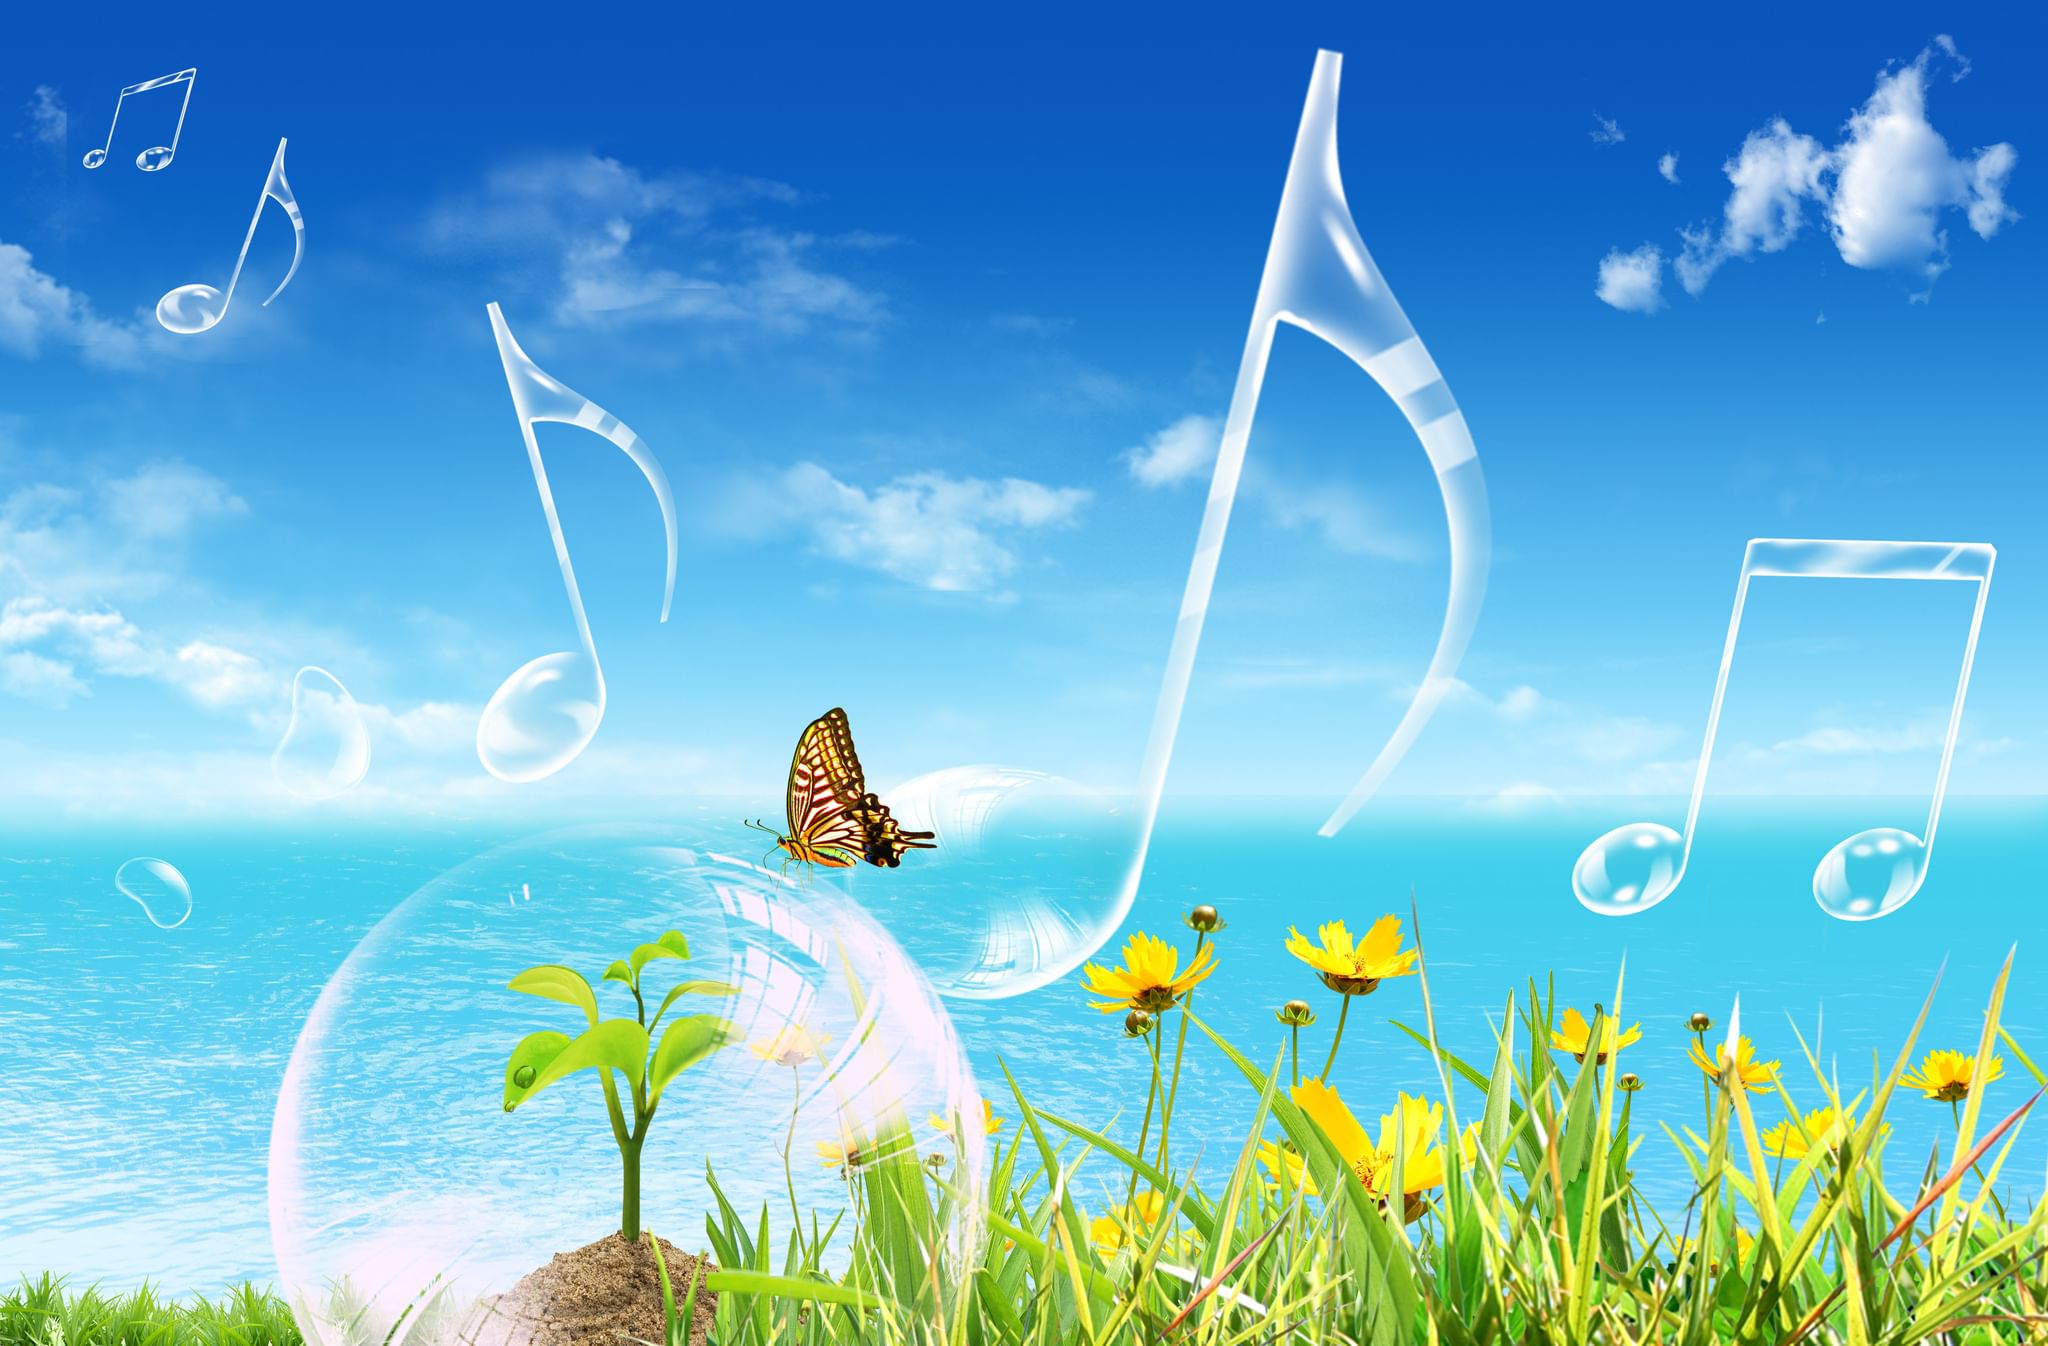 Мир вокруг слушать. Лето. Музыкальное лето. Музыкальный пейзаж. Летнее настроение.